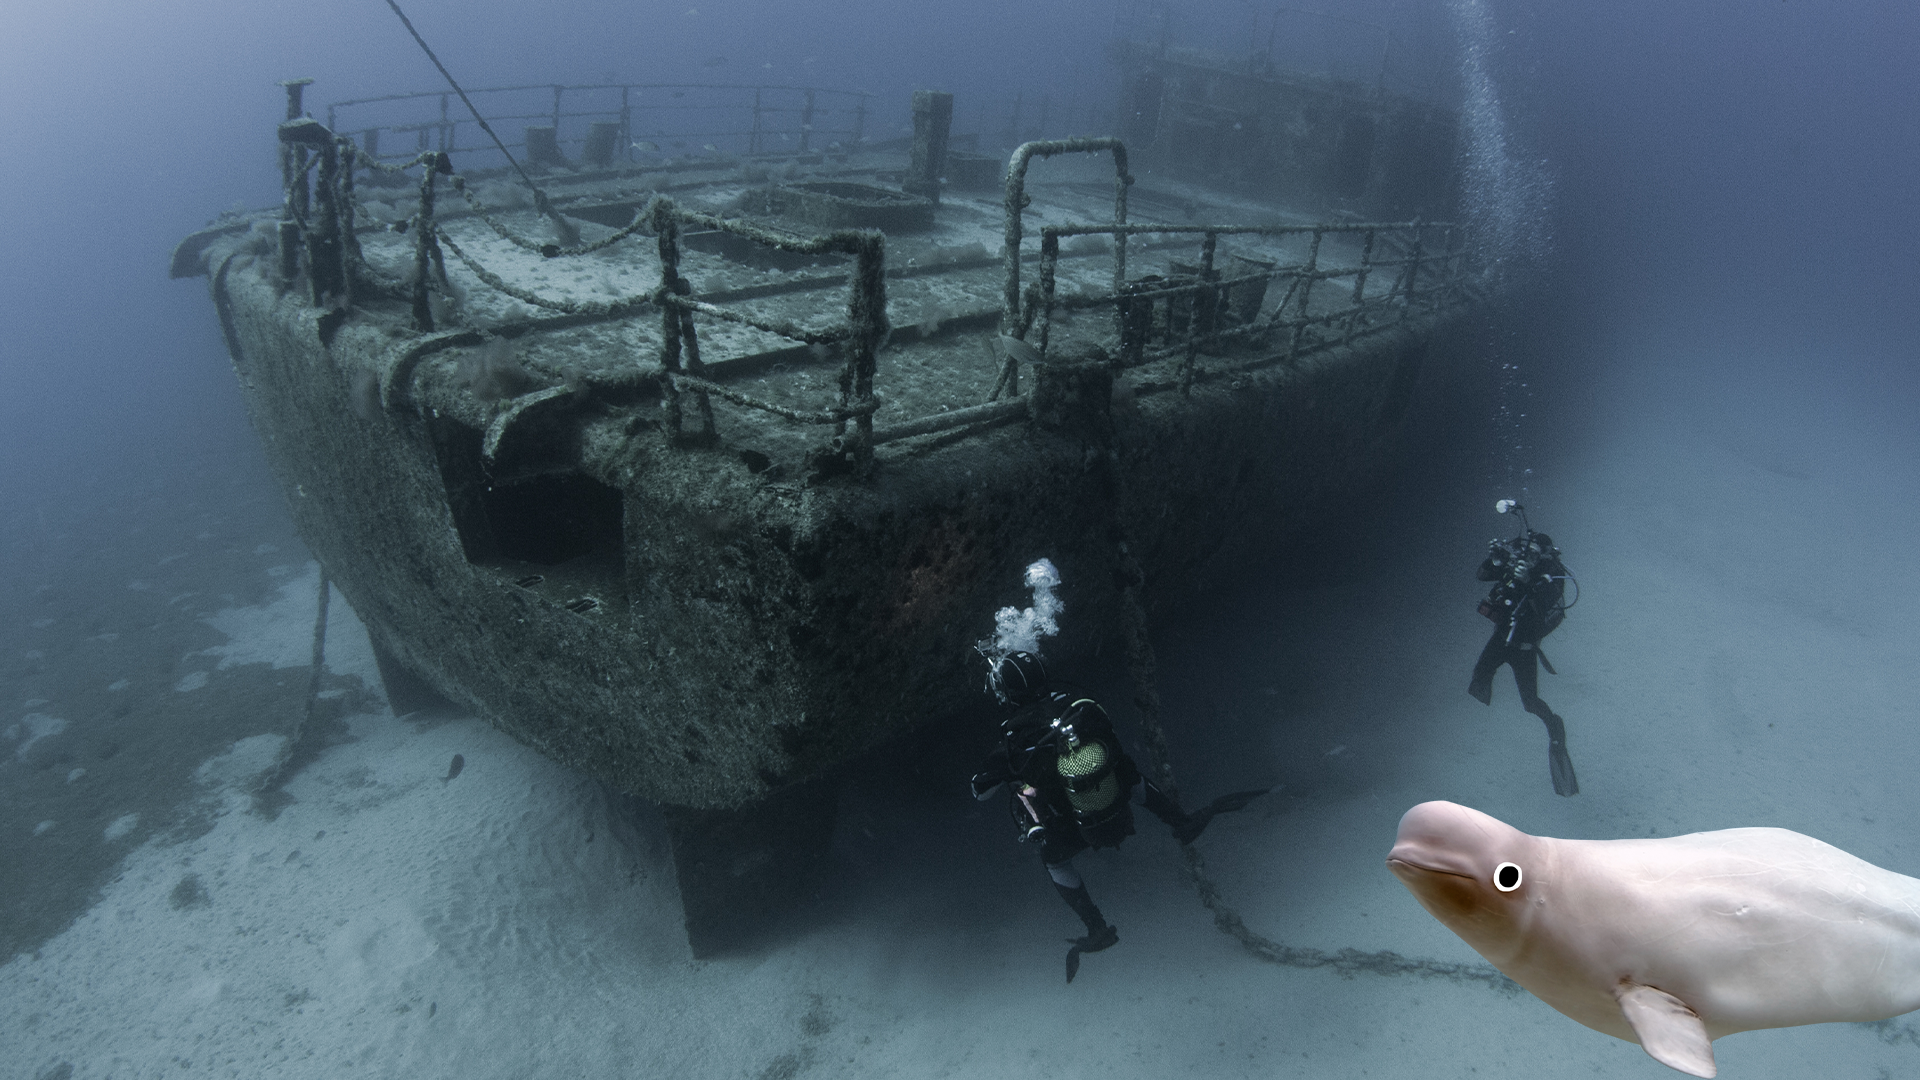 Underwater shipwreck and Beano beluga